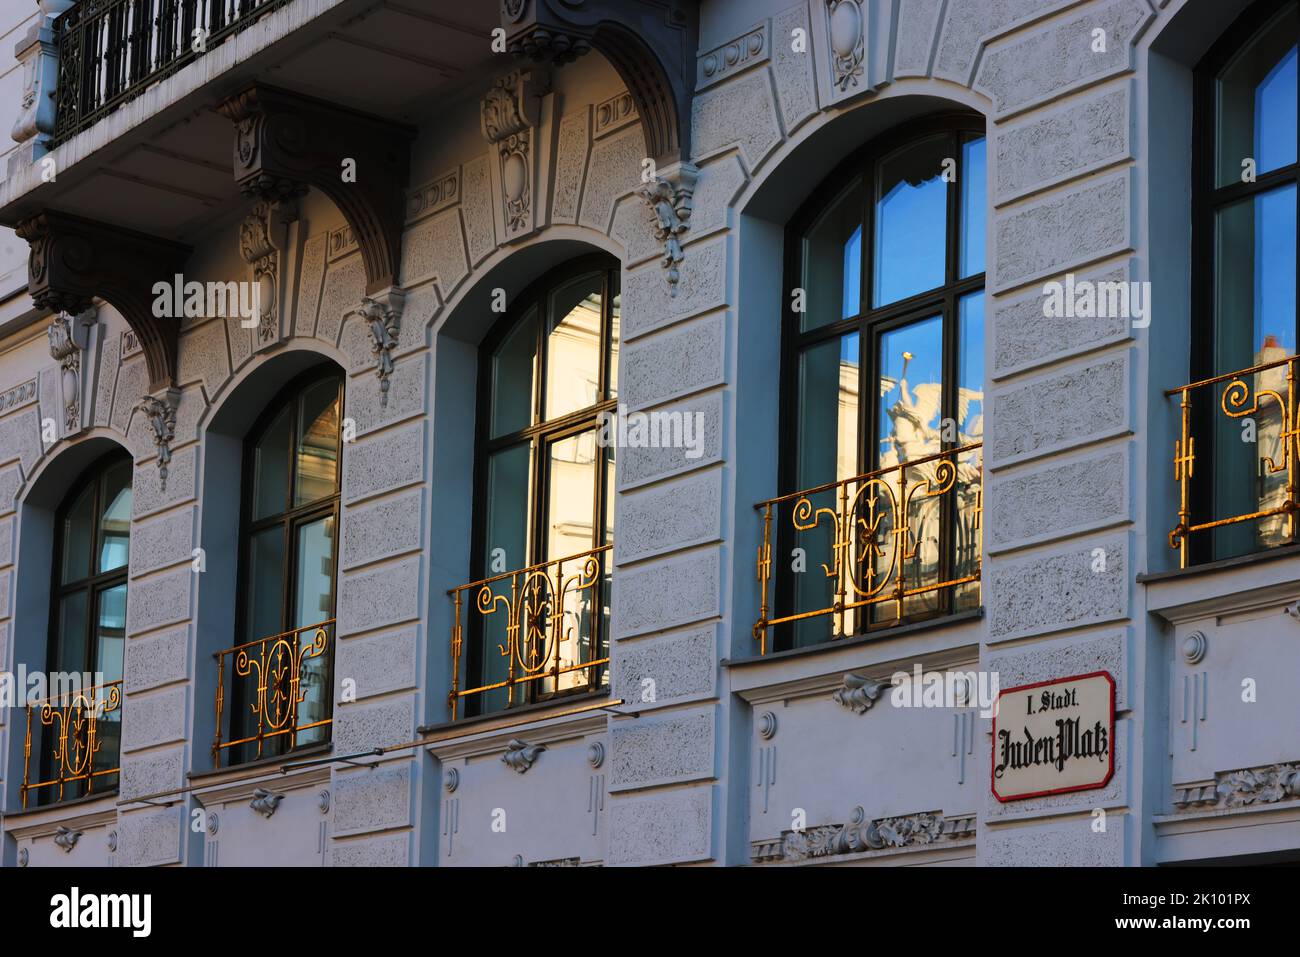 Fenster, Bürgerhaus, Schloss, Vienna, Architektur in der Innenstadt oder Altstadt von Wien Österreich Stock Photo